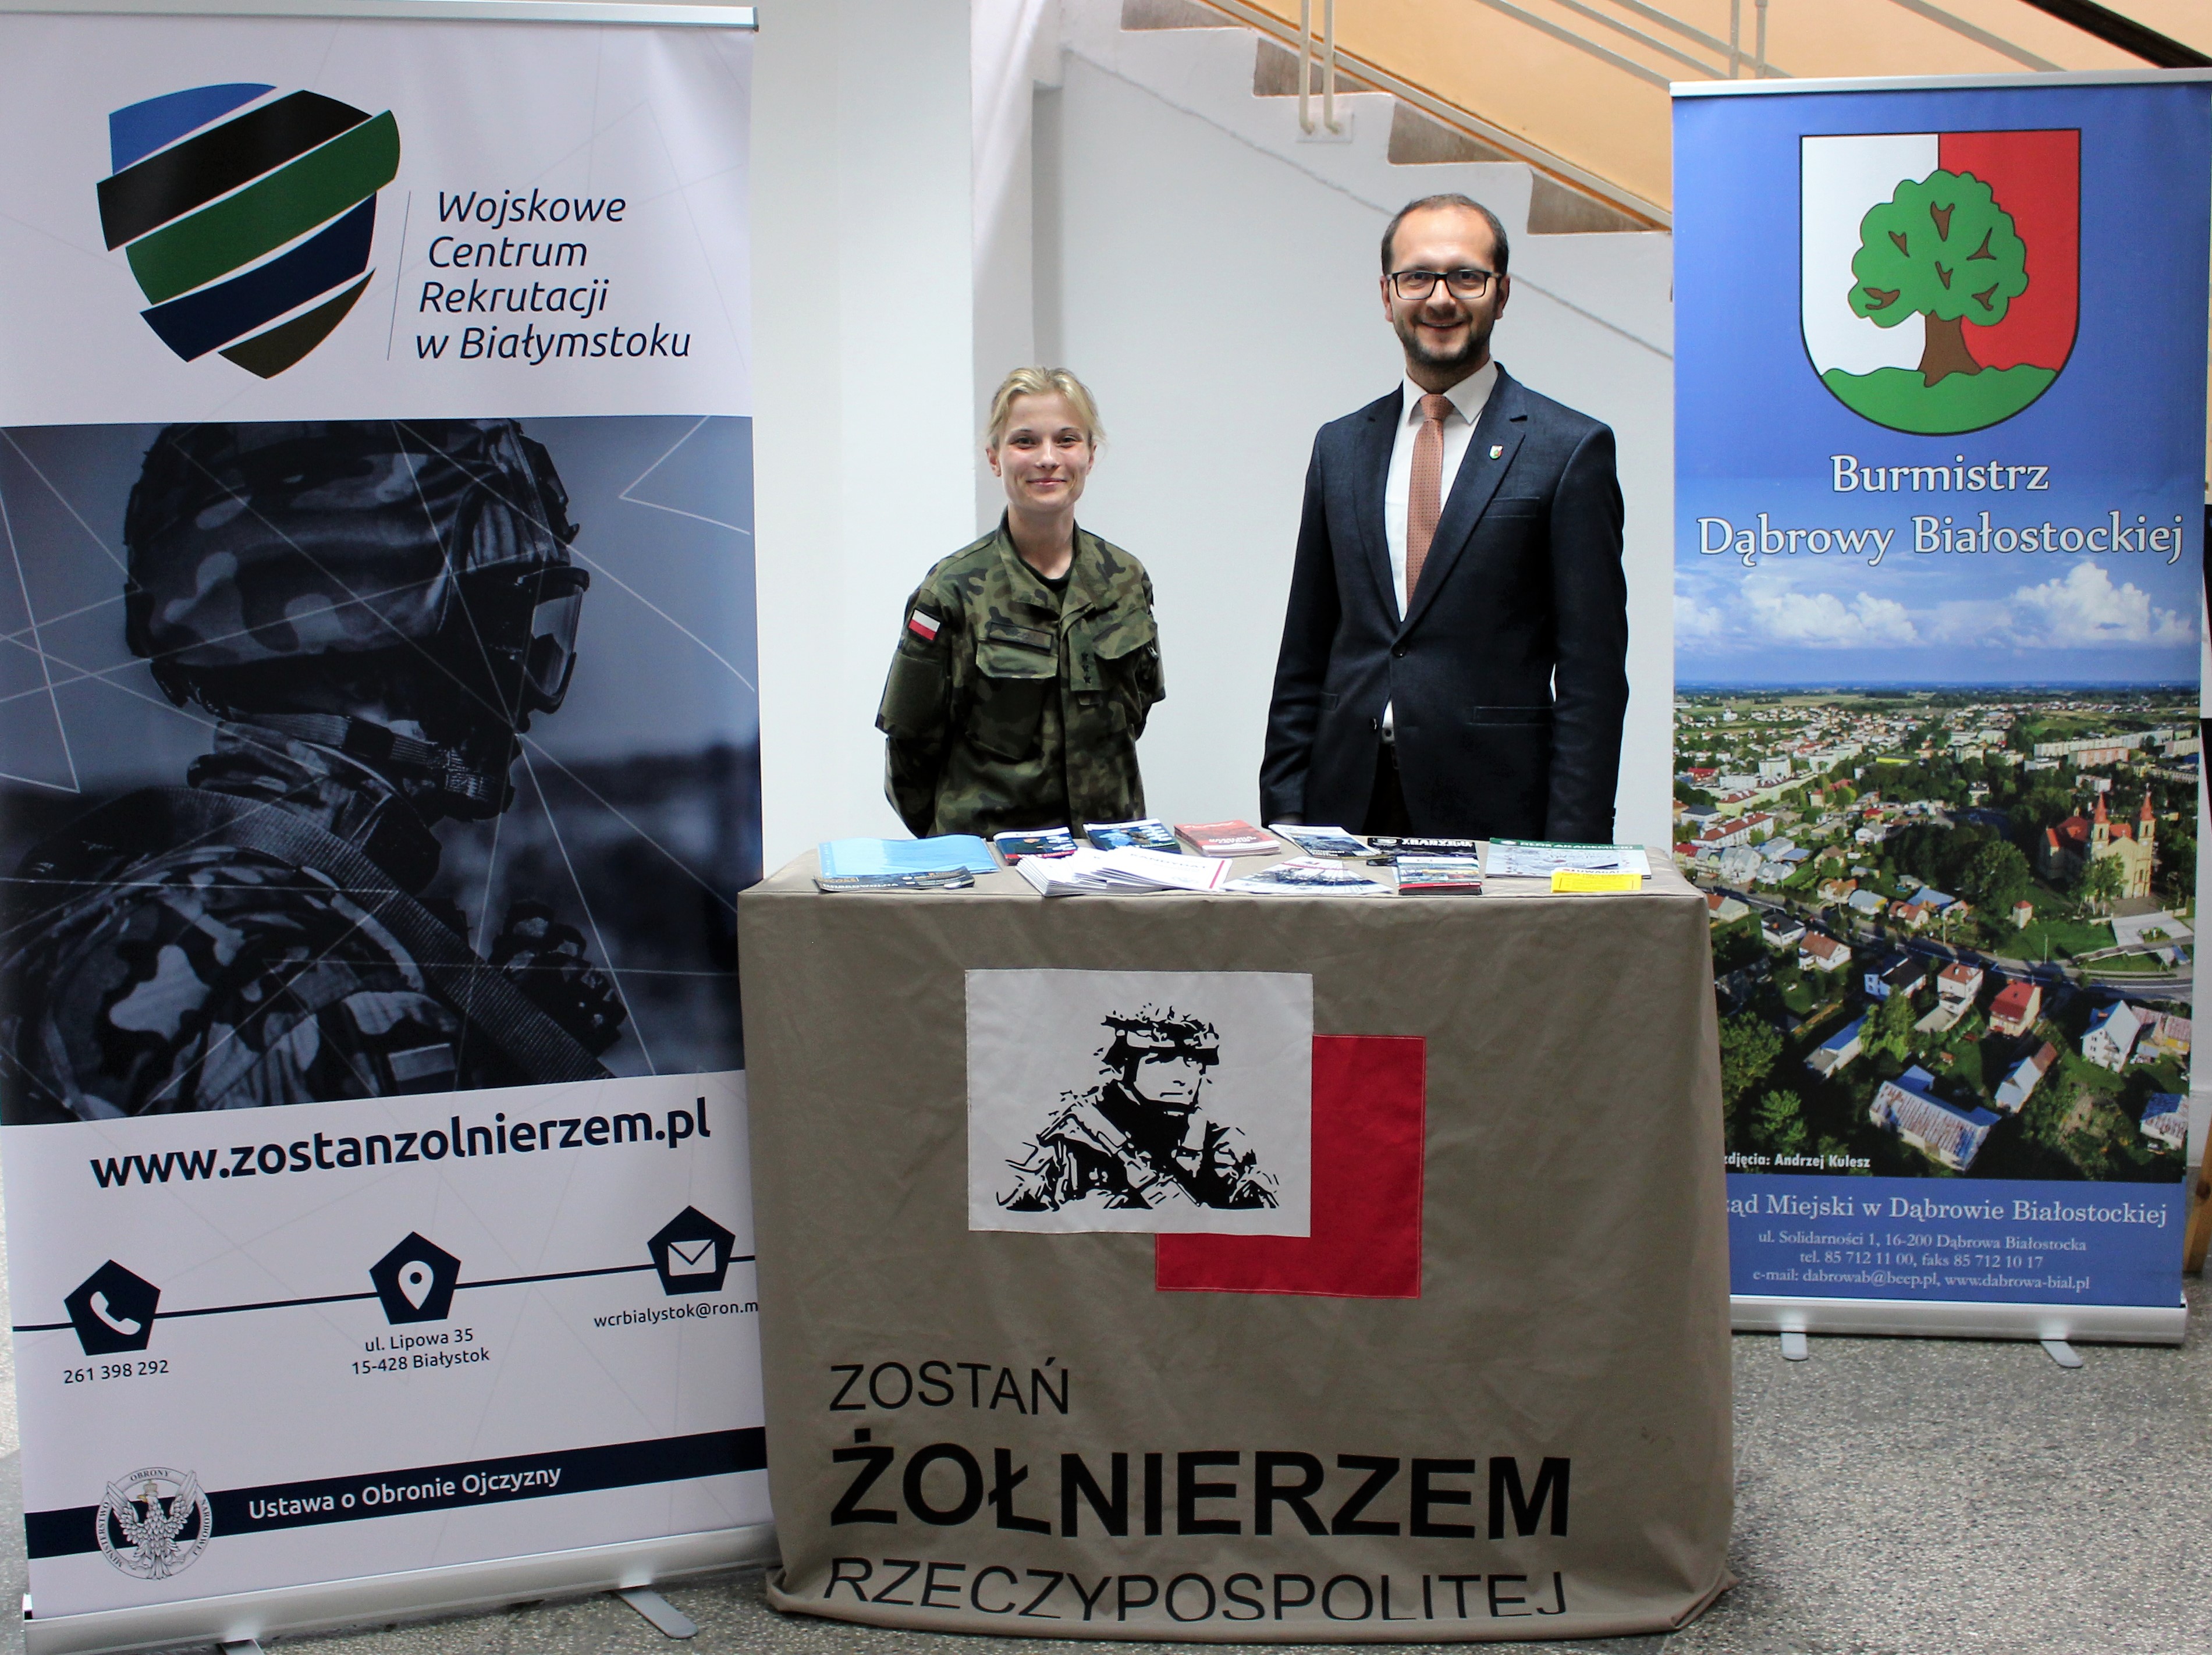 kobieta żołnierz, burmistrz przy stoisku promującym służbą w Wojsku Polskim